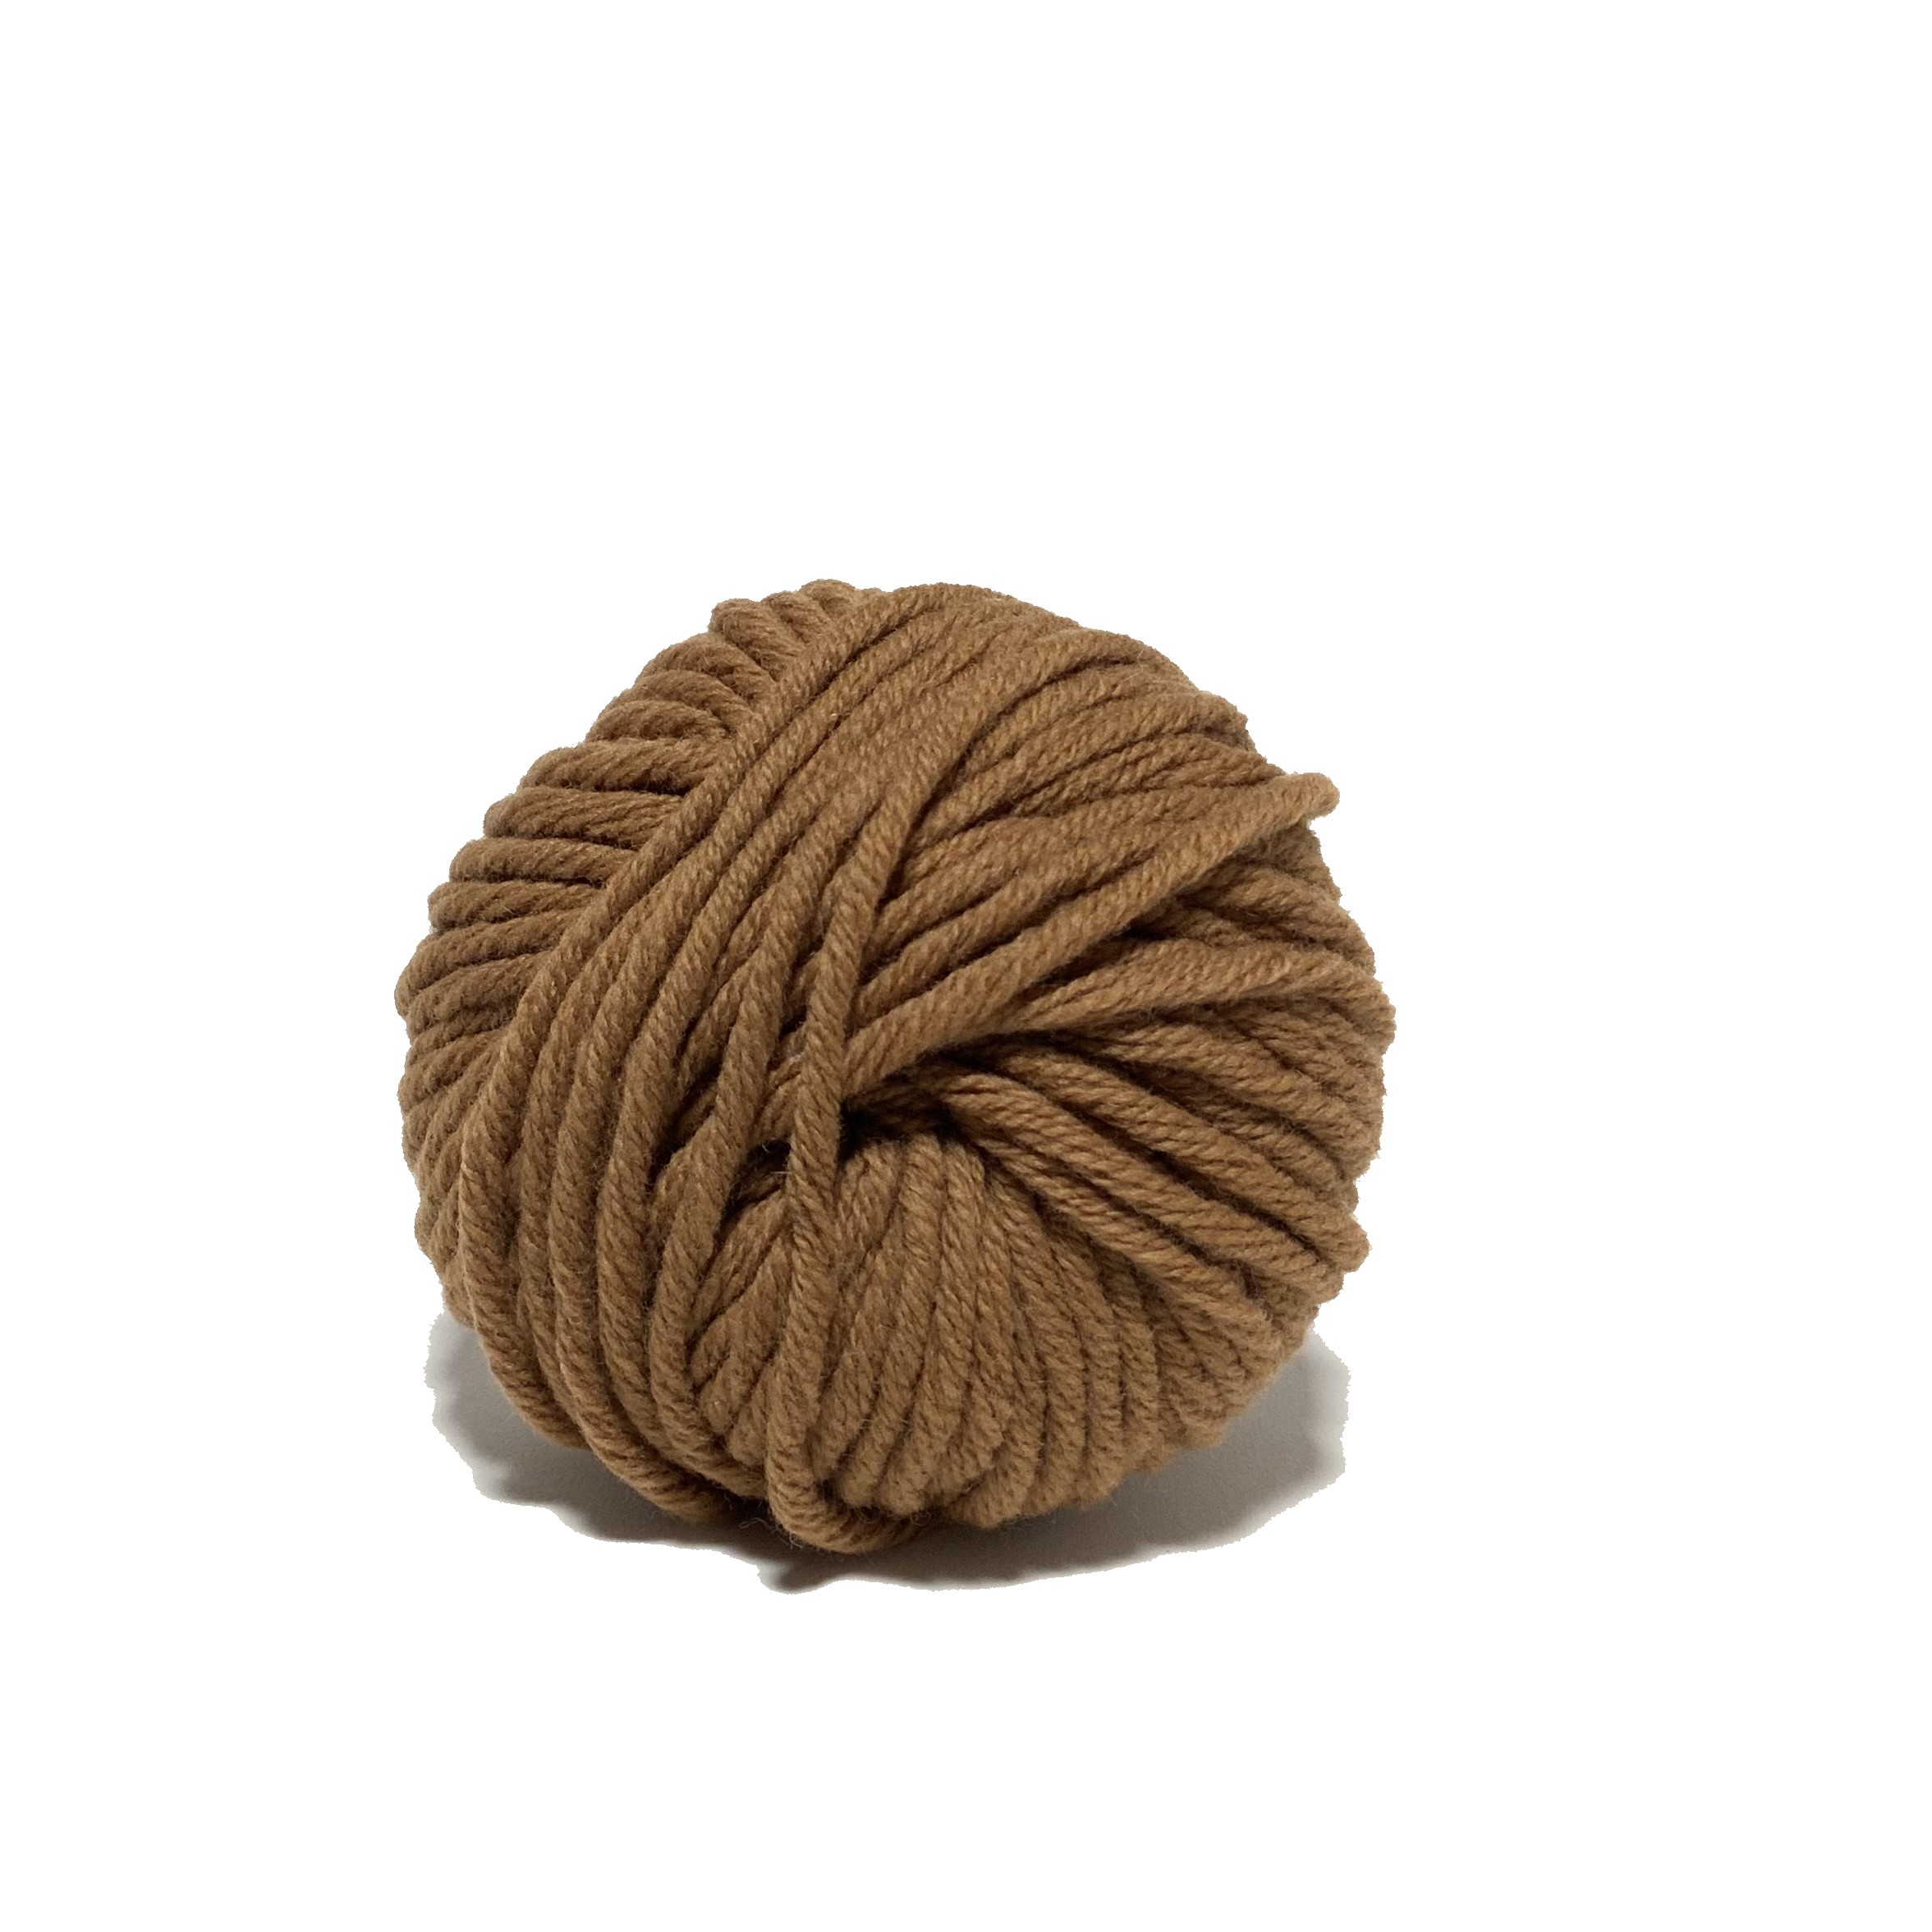 PURE LAINE 8 - 100% Pure laine mérinos - Textile de la Marque